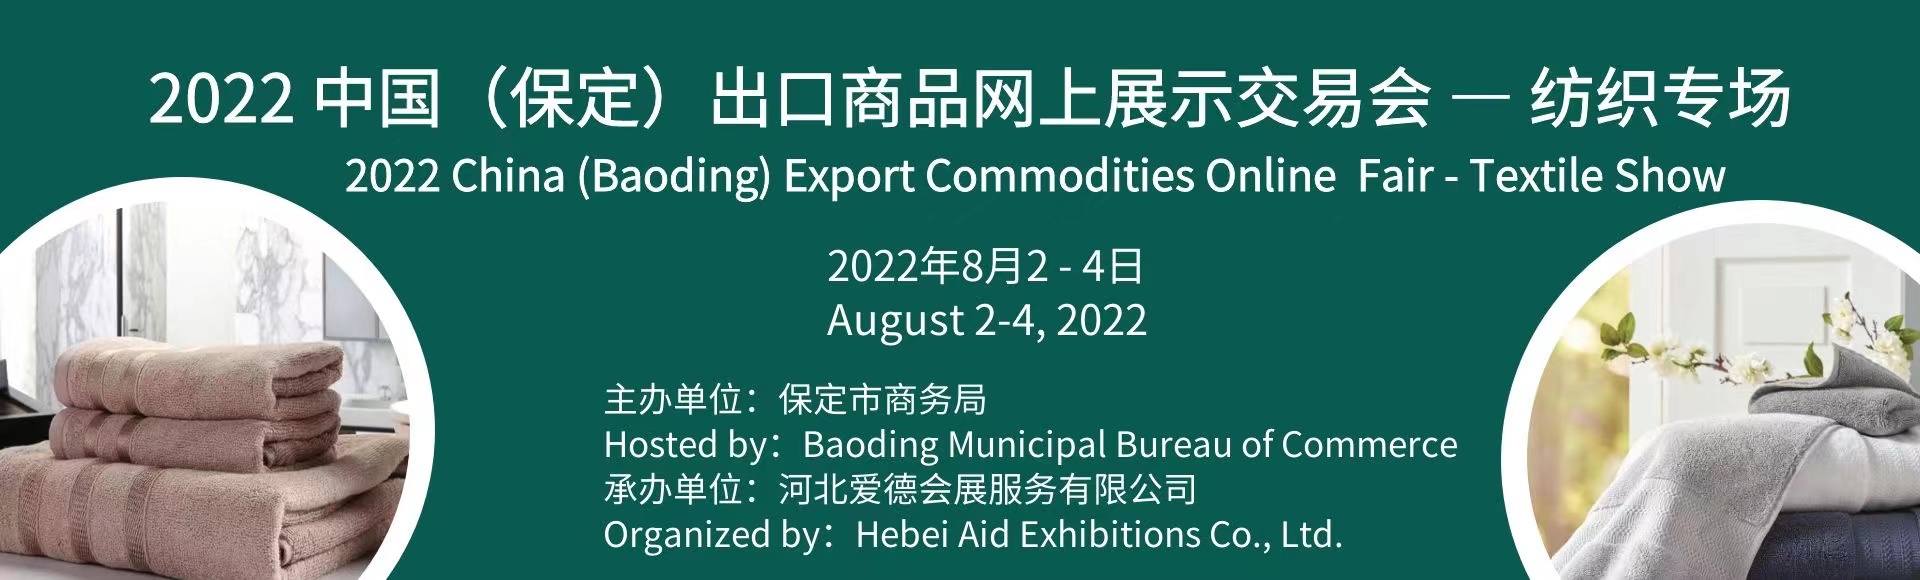 2022<font color=#ff0000>中国</font>（保定）出口商品网上展示交易会-纺织专场